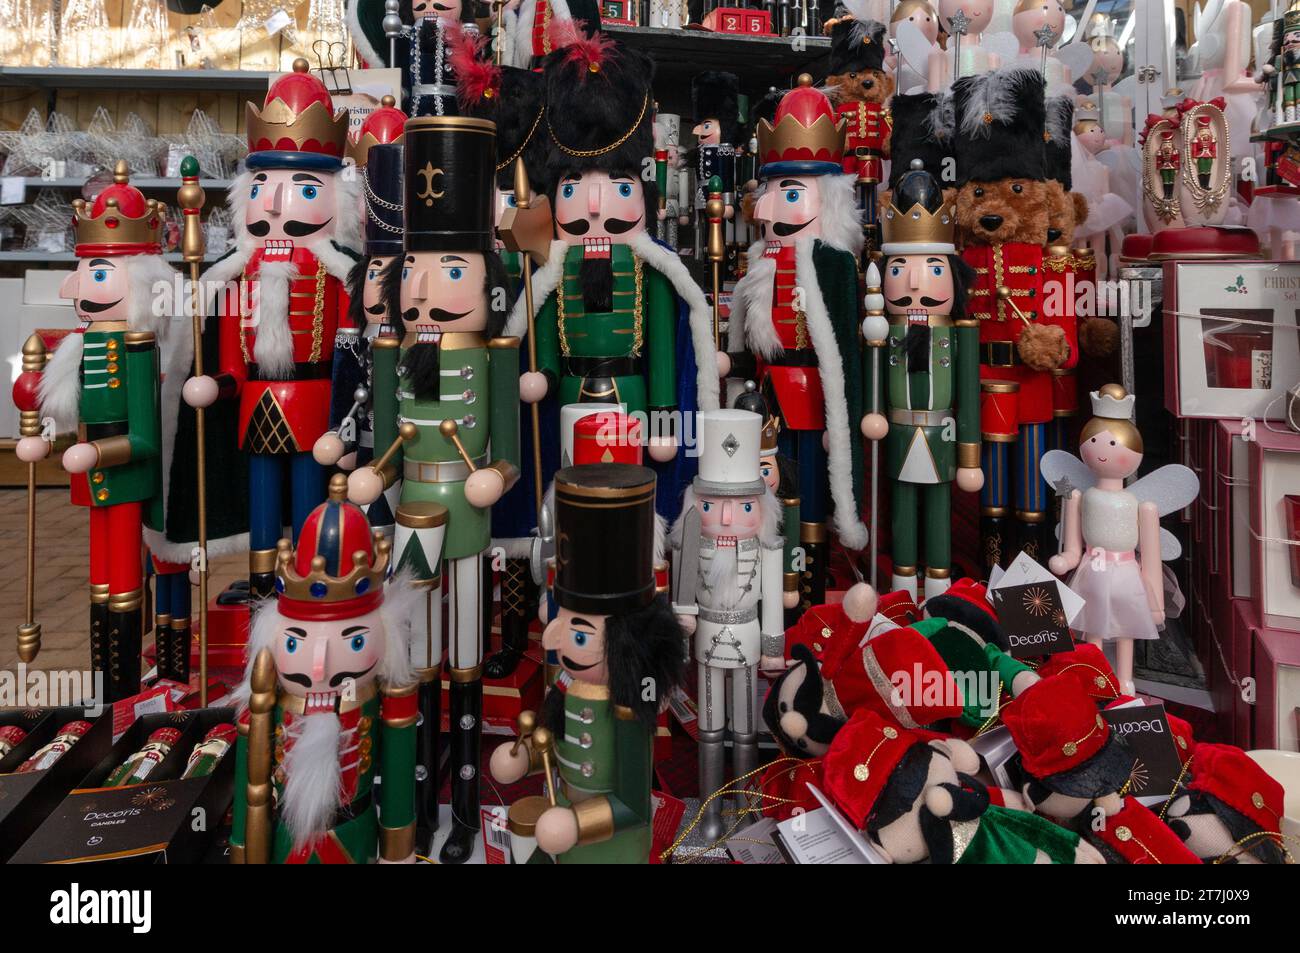 Présentation de figurines casse-noisettes pour cadeaux ou décorations de Noël, Beckworth Emporium, Mears Ashby, Northamptonshire, Royaume-Uni Banque D'Images